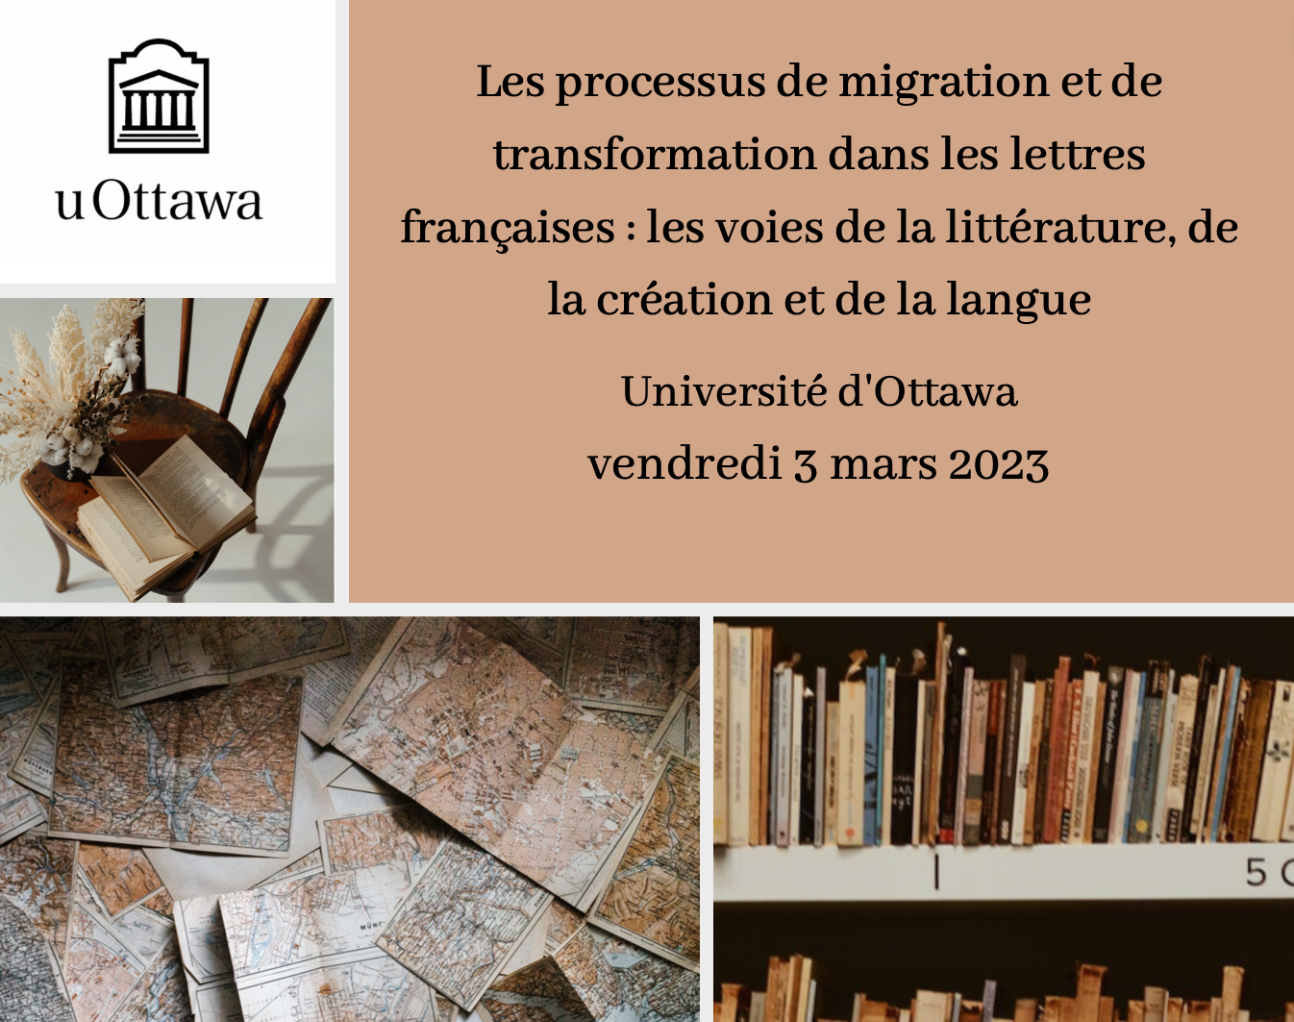 Les processus de migration et de transformation dans les lettres françaises : les voies de la littérature, de la création et de la langue (Ottawa)